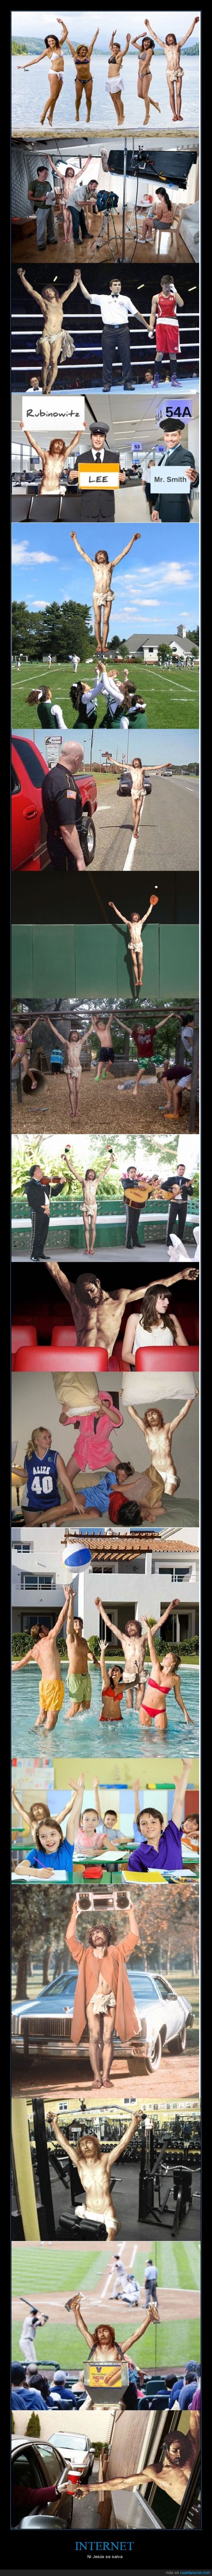 crucificado,cruz,brazos,chop,fotos,que sera lo siguiente...,internet,pose,photoshop,Jesús